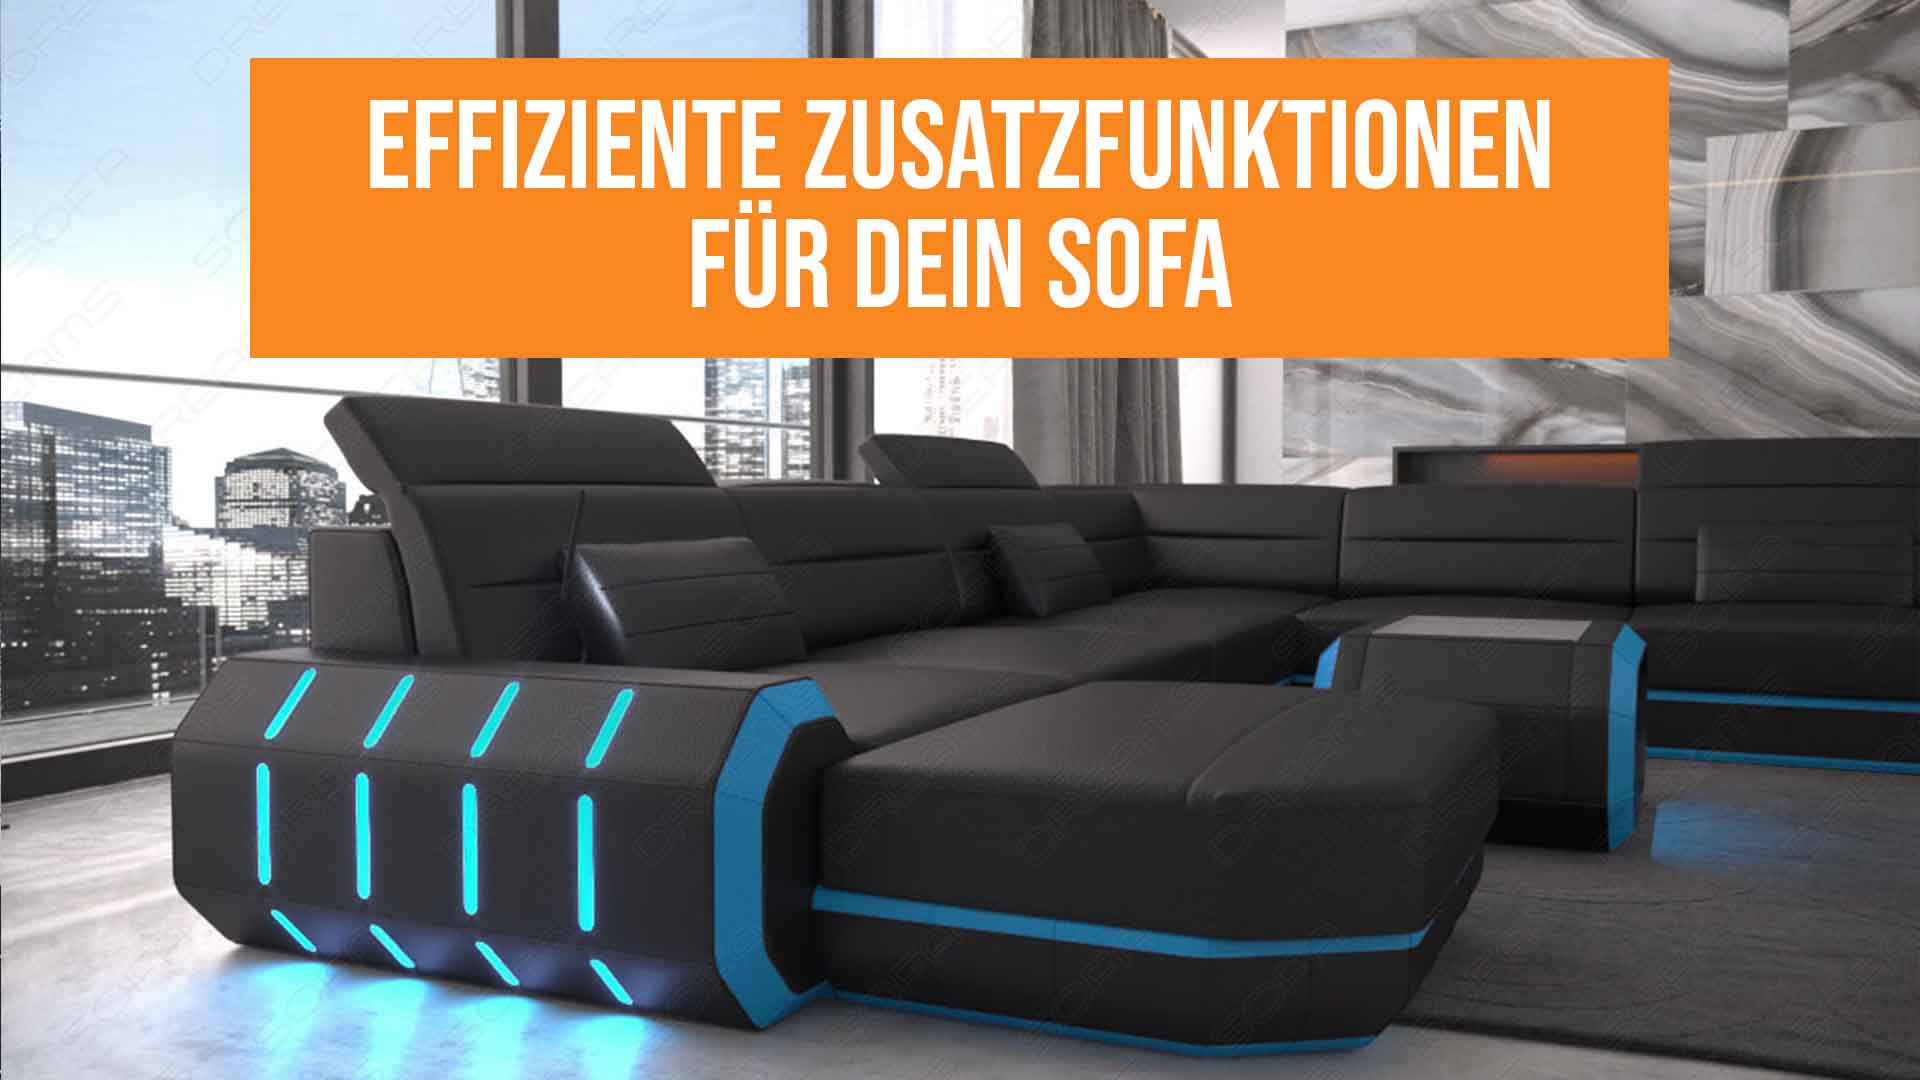 Effiziente Zusatzfunktionen für dein Sofa: Wohnzimmer Upgrade